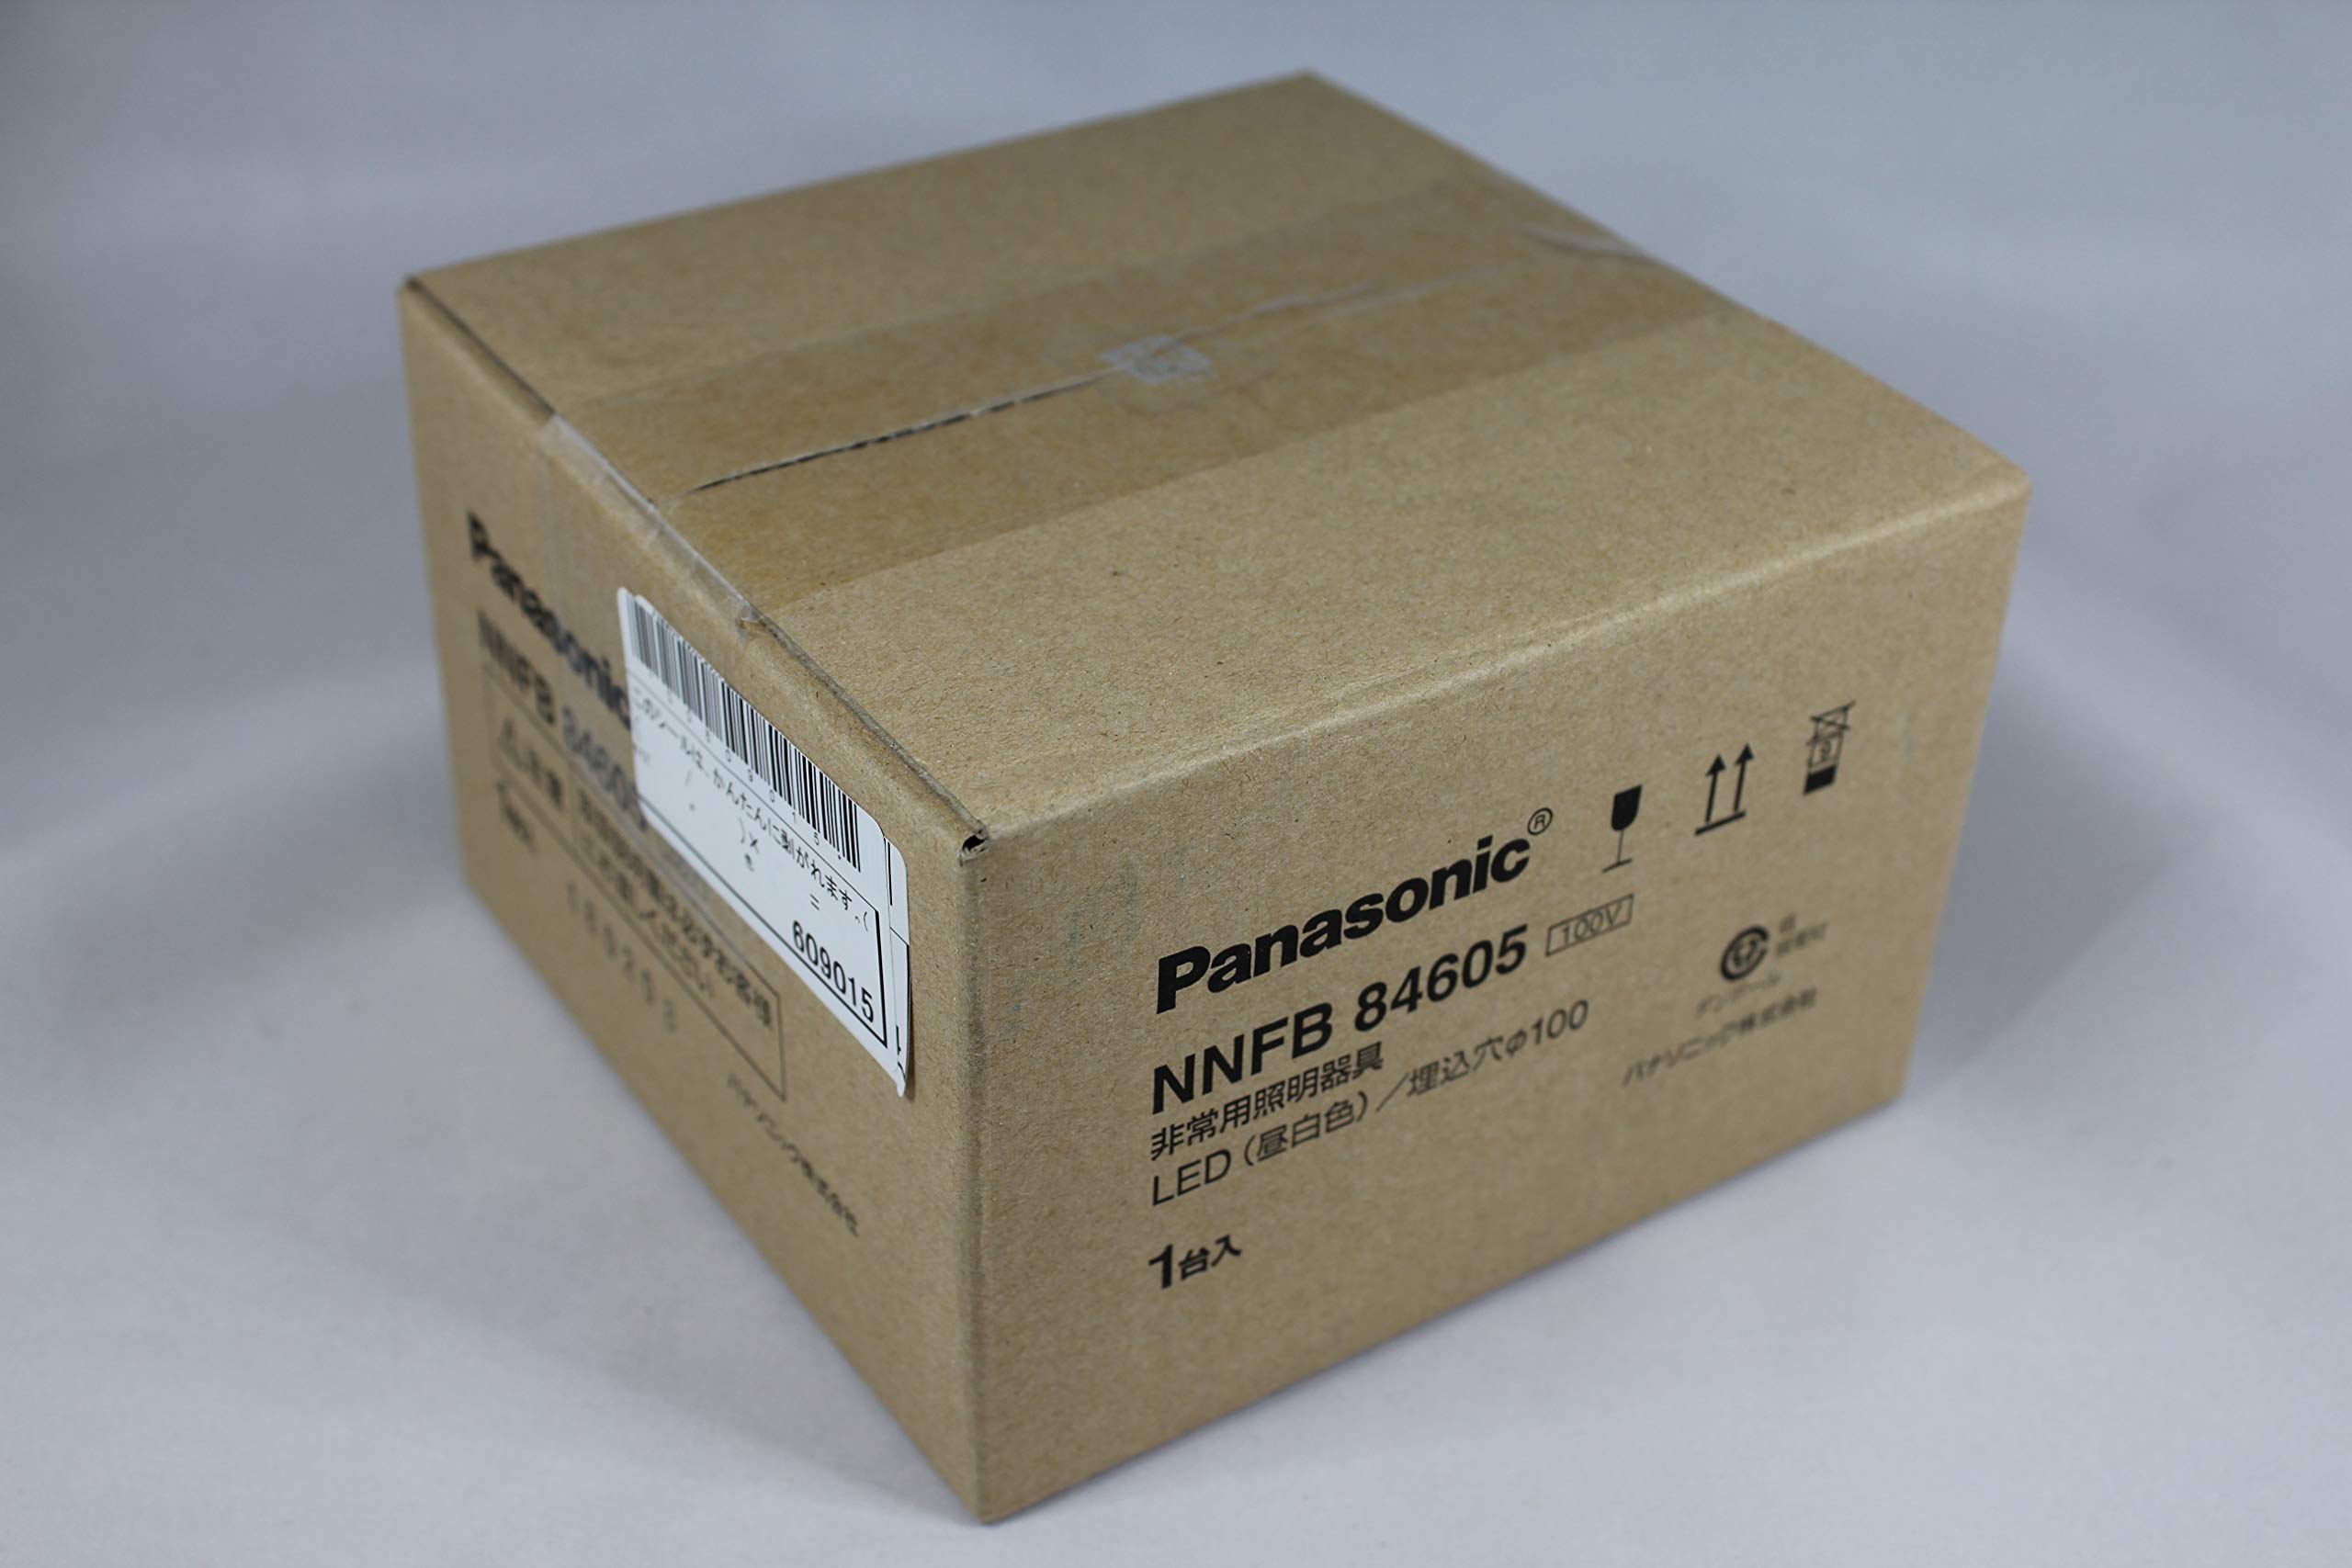 パナソニック(Panasonic) LED非常用照明器具 専用型 埋込型30分間タイプ φ100 LED低天井用(～6m) NNFB84605